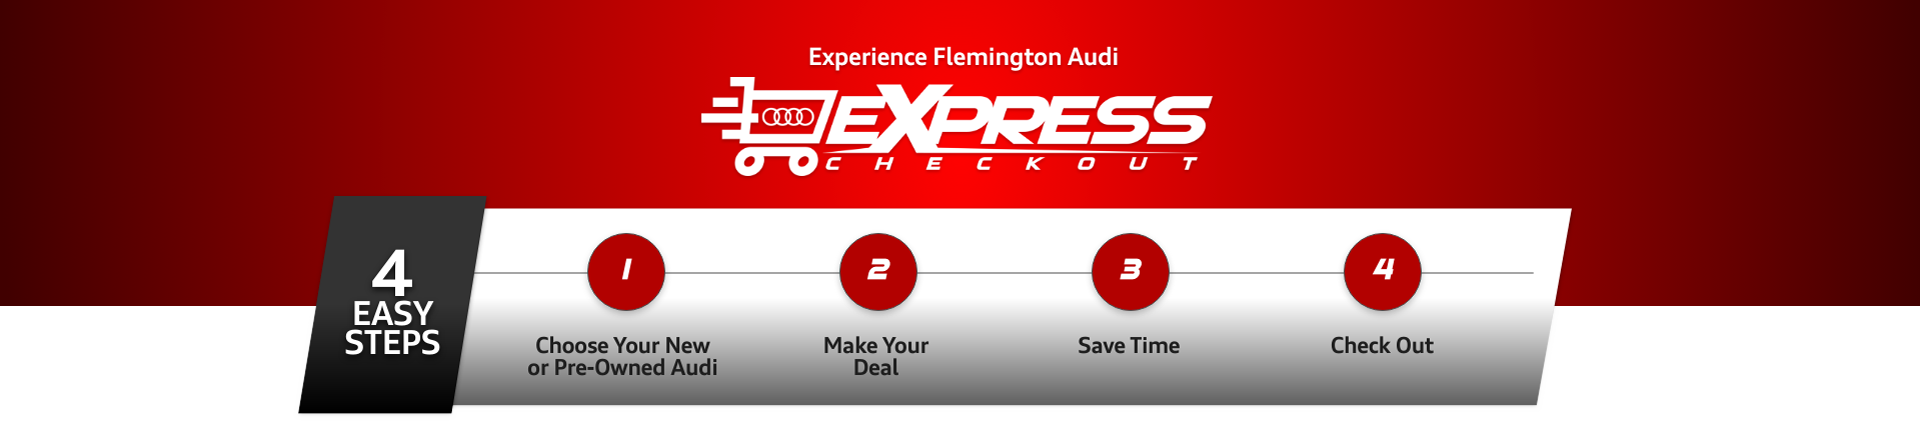 Flemington Audi Express Checkout